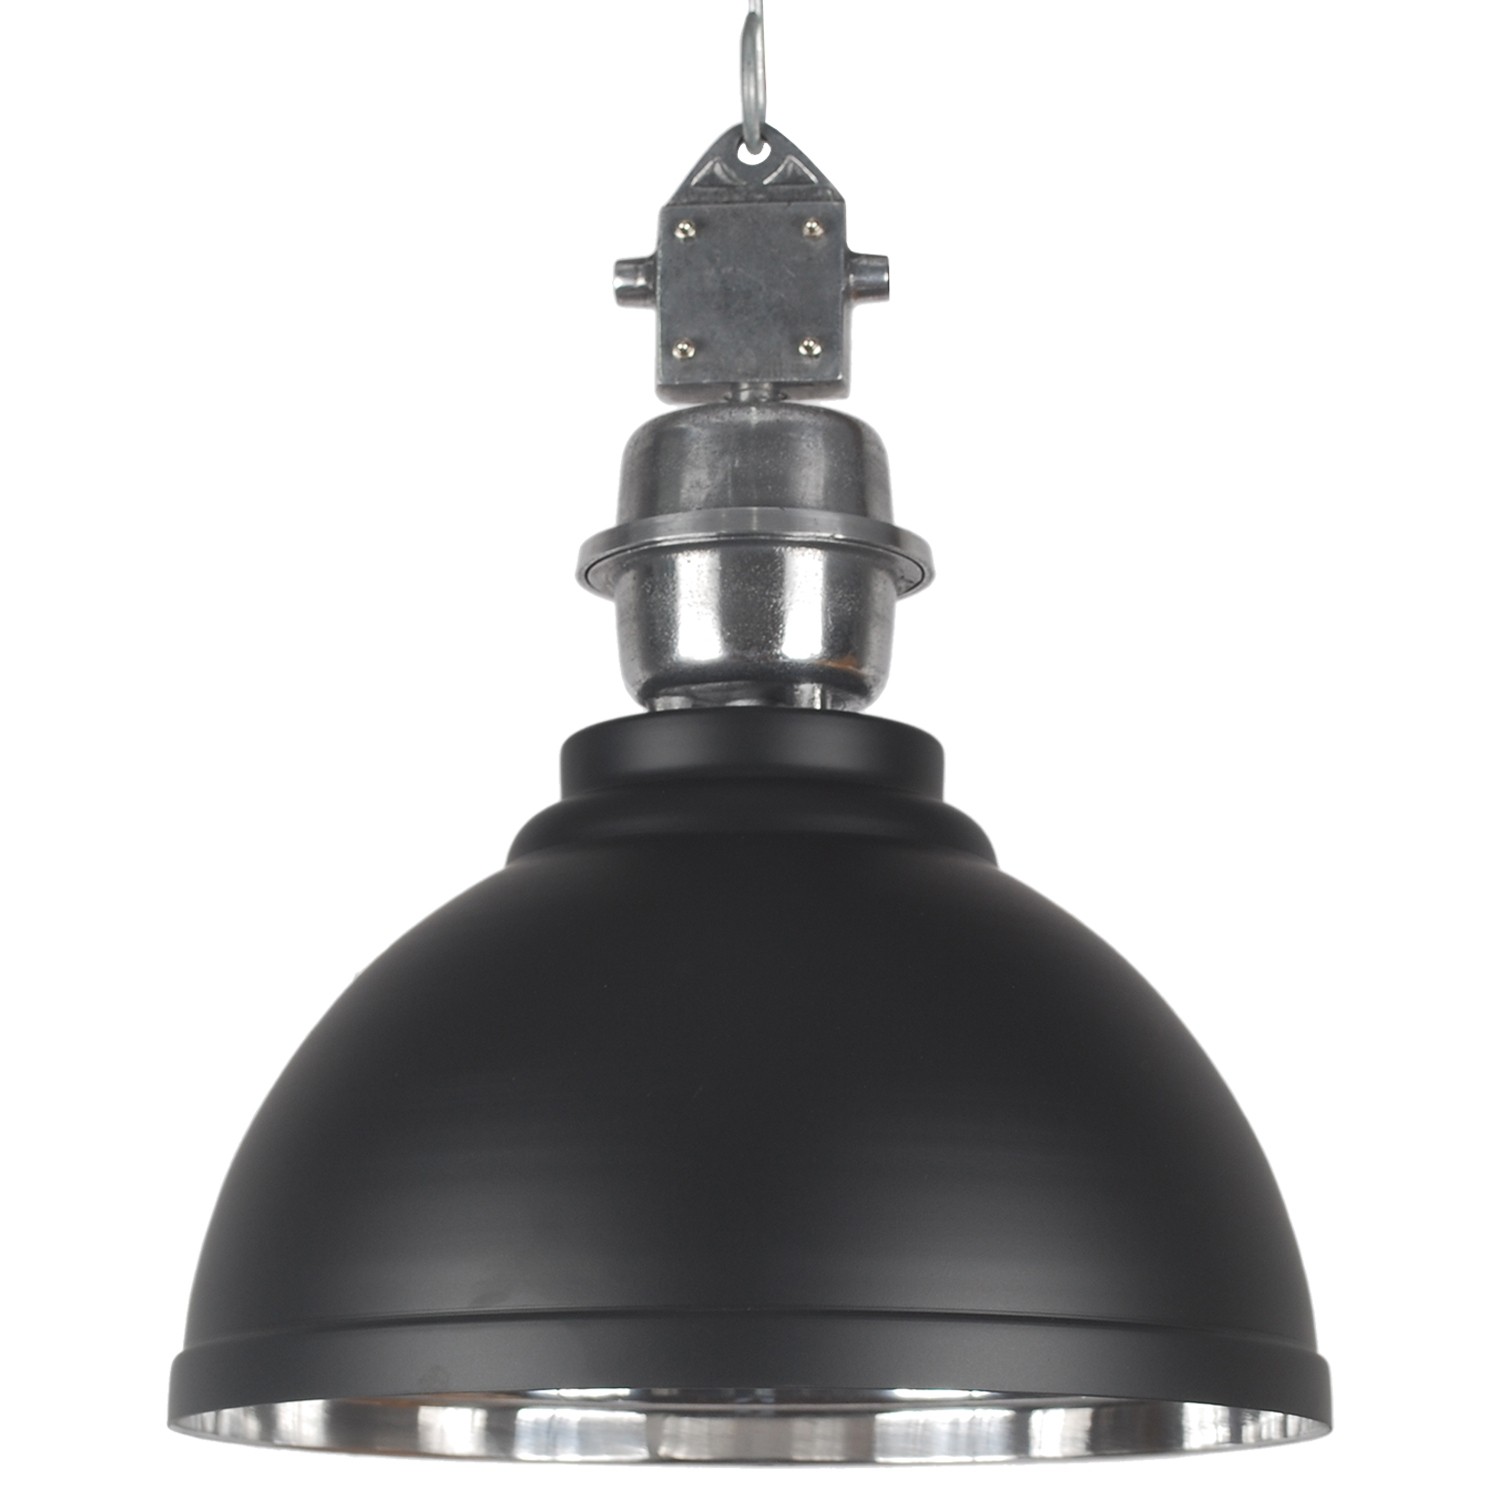 Pendelleuchte schwarz - silber Industrie-Lampe, Hängelampe schwarz Industrie, Durchmesser 42 cm